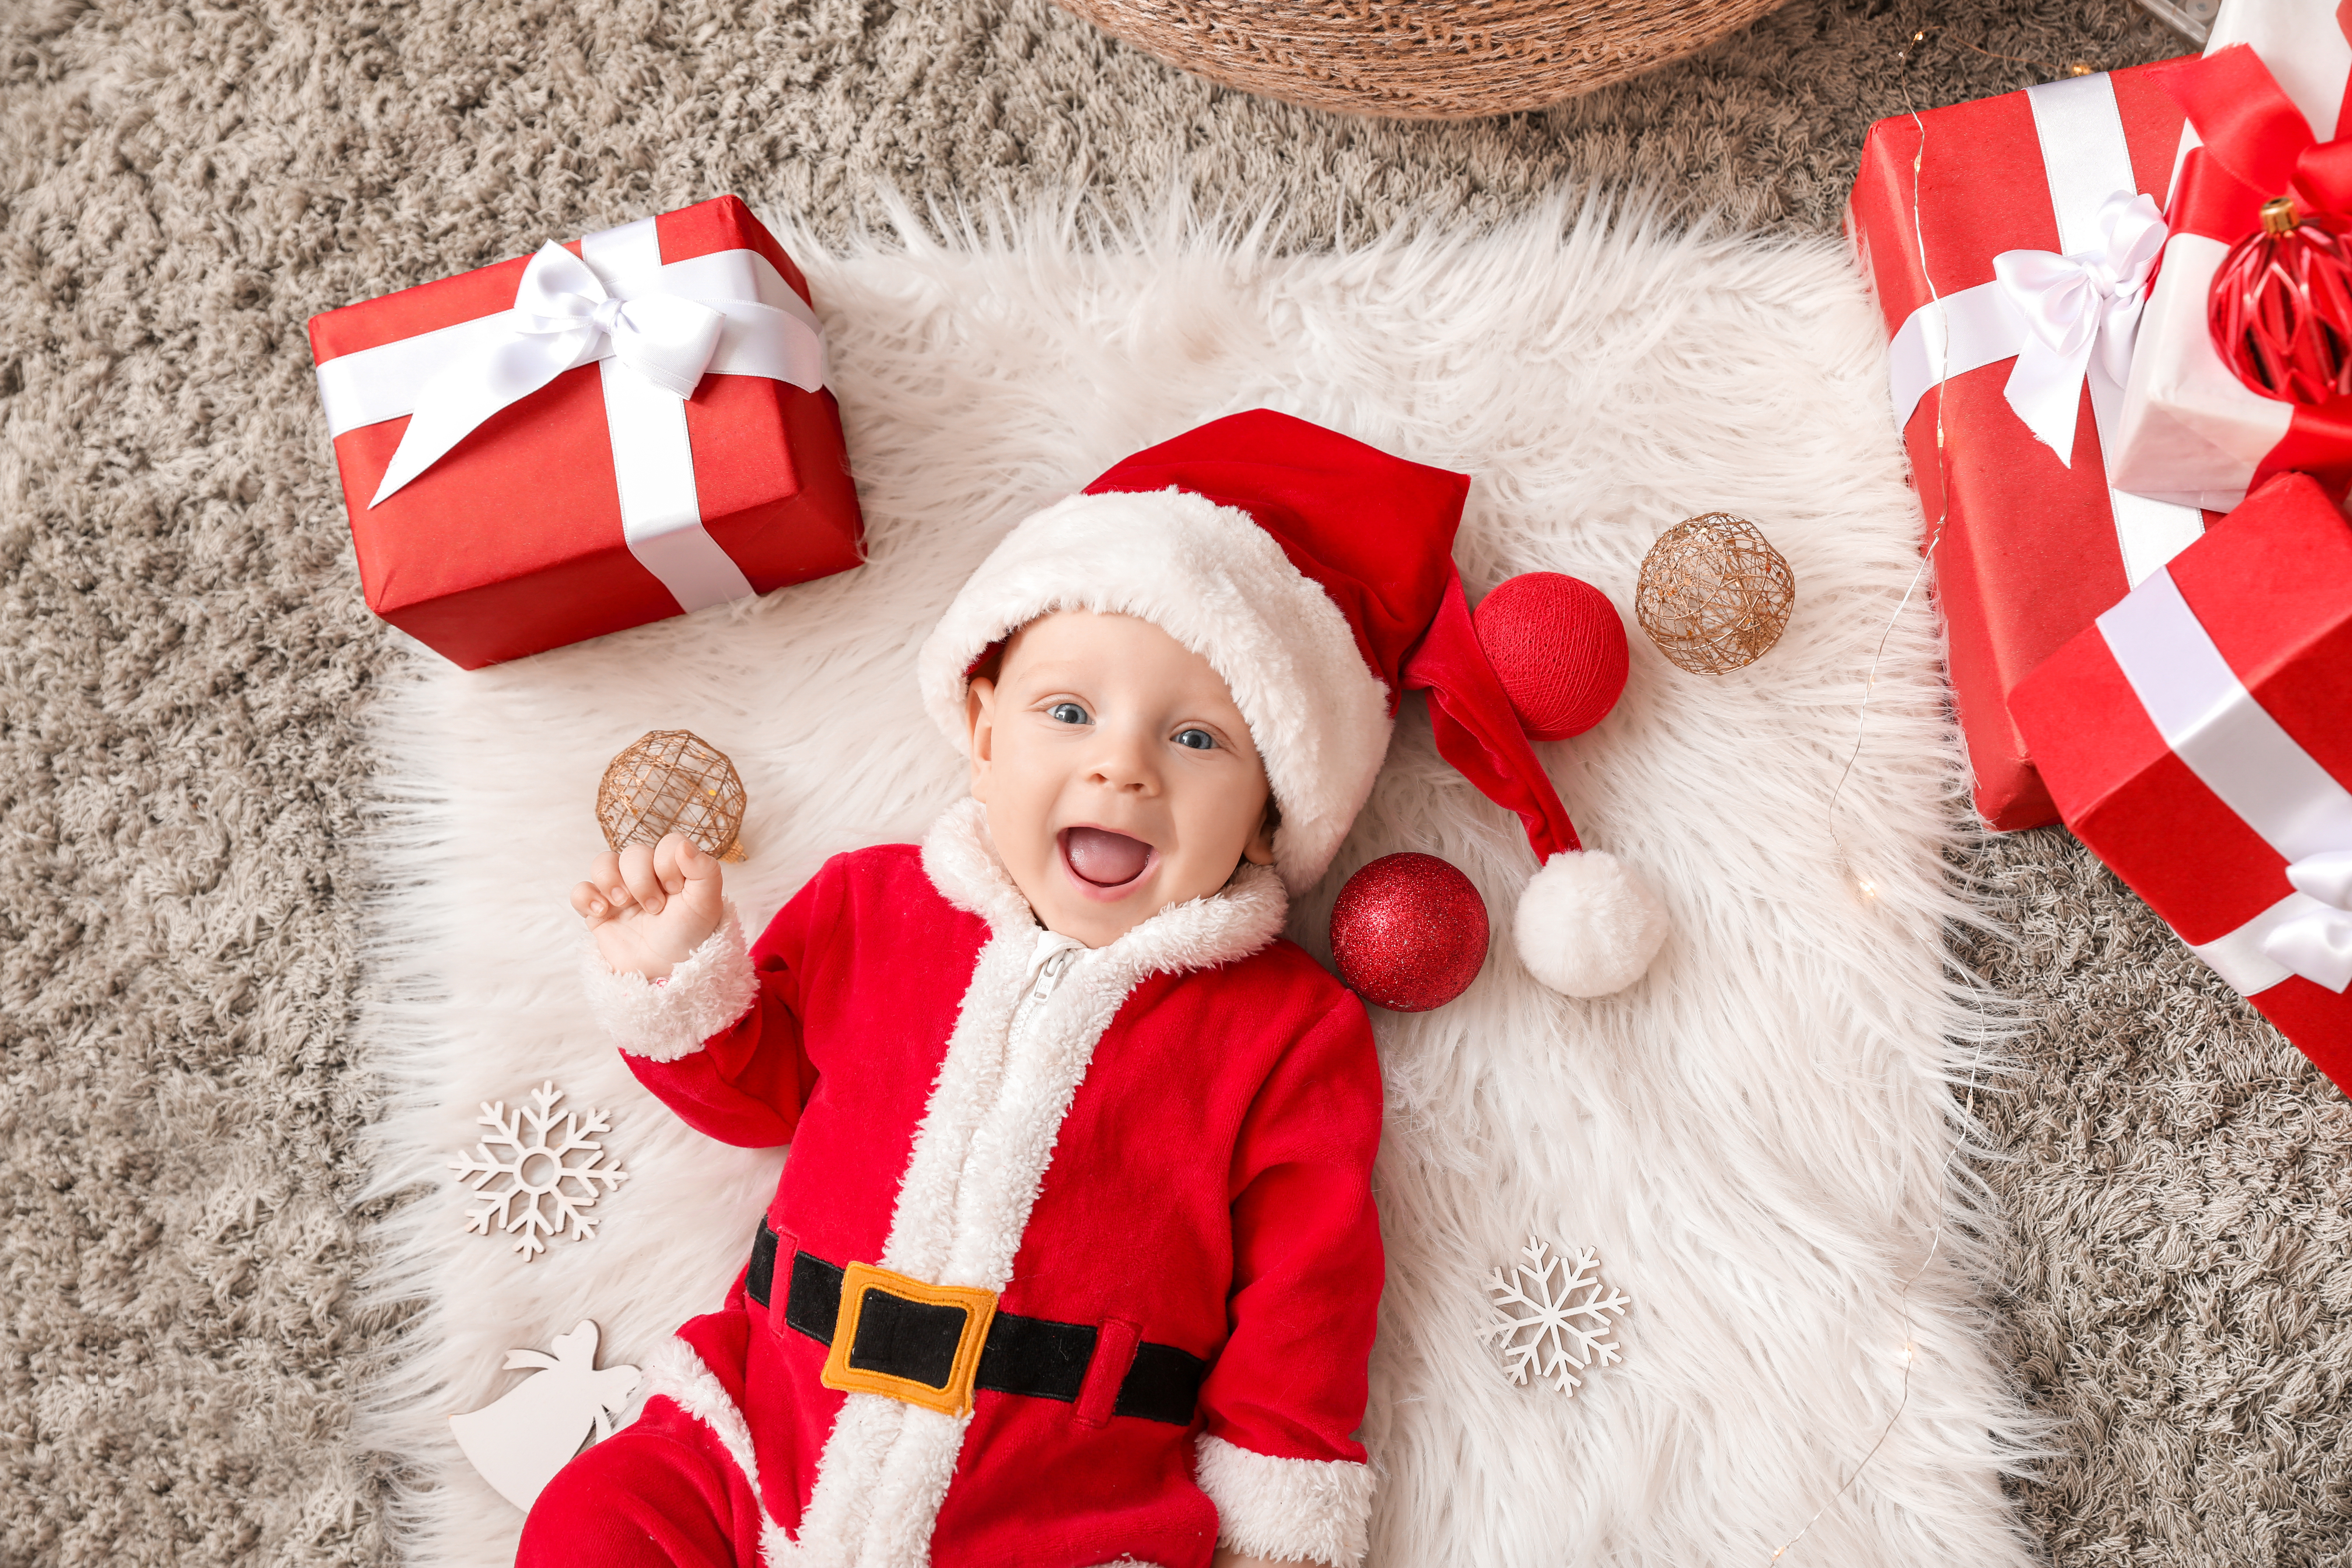 Скачать обои бесплатно Рождество, Малыш, Ребёнок, Фотографии, Подарки, Шляпа Санты картинка на рабочий стол ПК